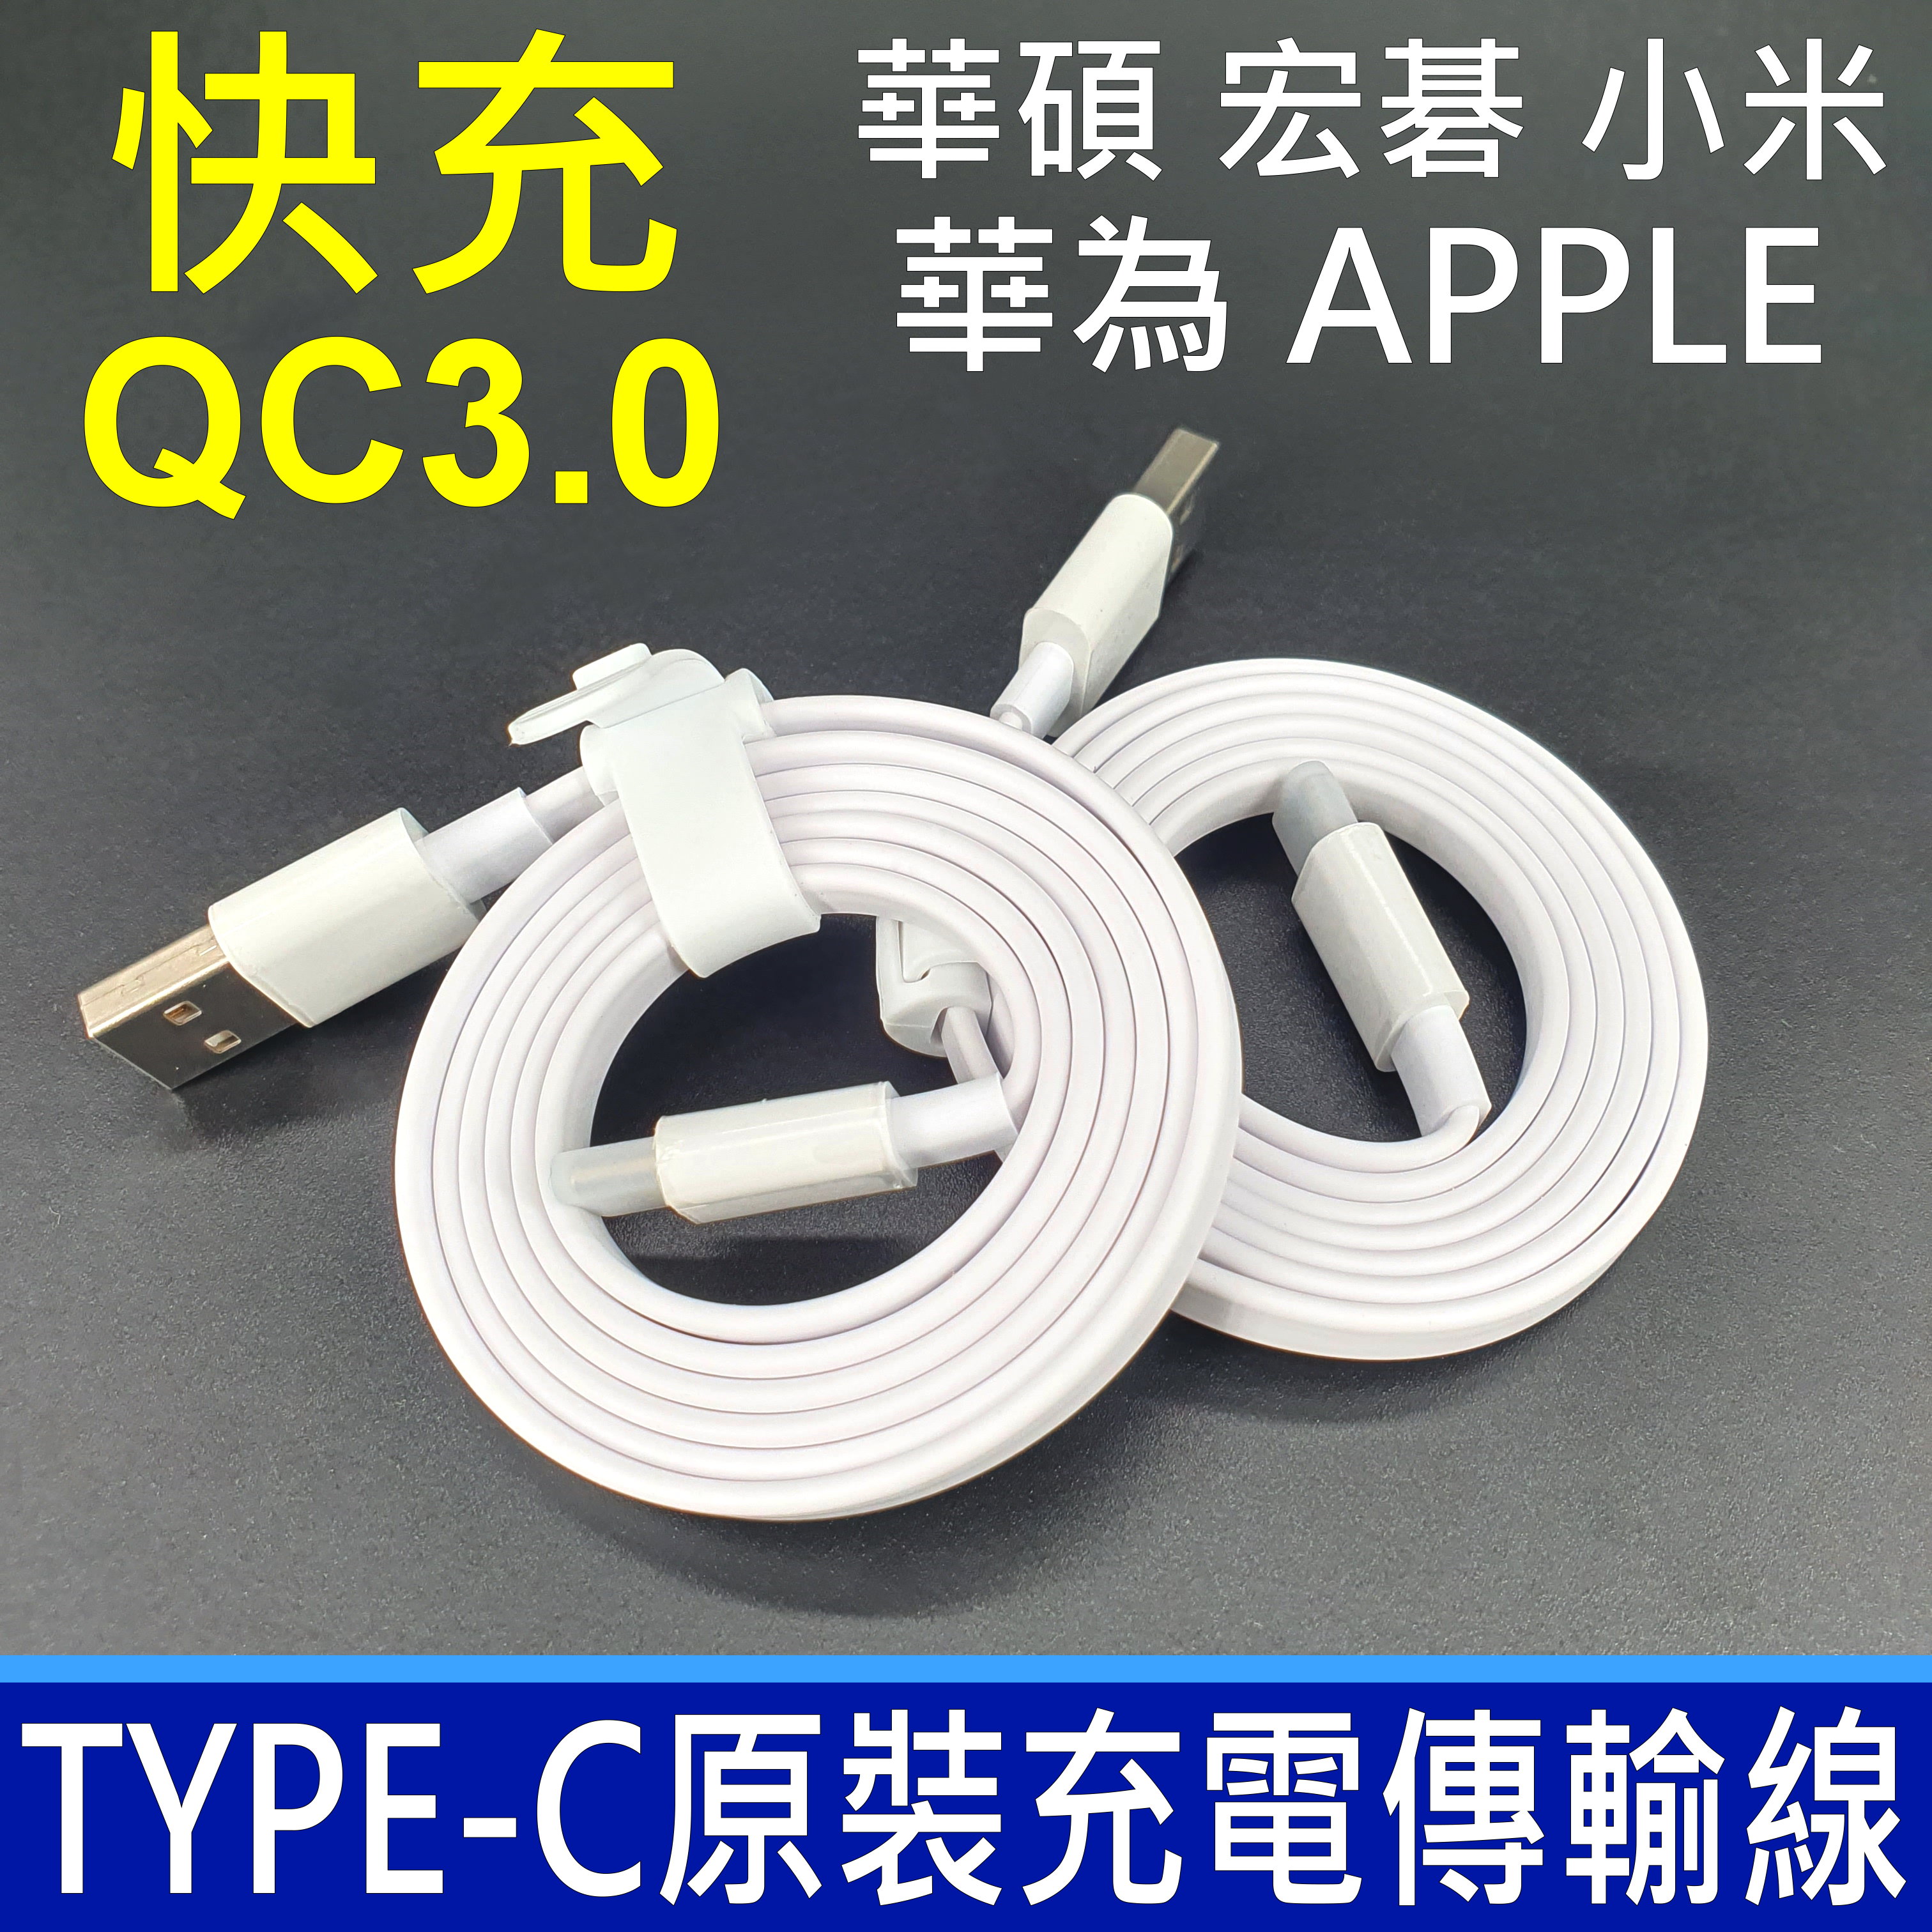 原廠傳輸線 TYPE-C 支援 QC3.0 充電線 電源線 數據線 快充線 小米 Acer 華為 華碩 ASUS 現貨 0